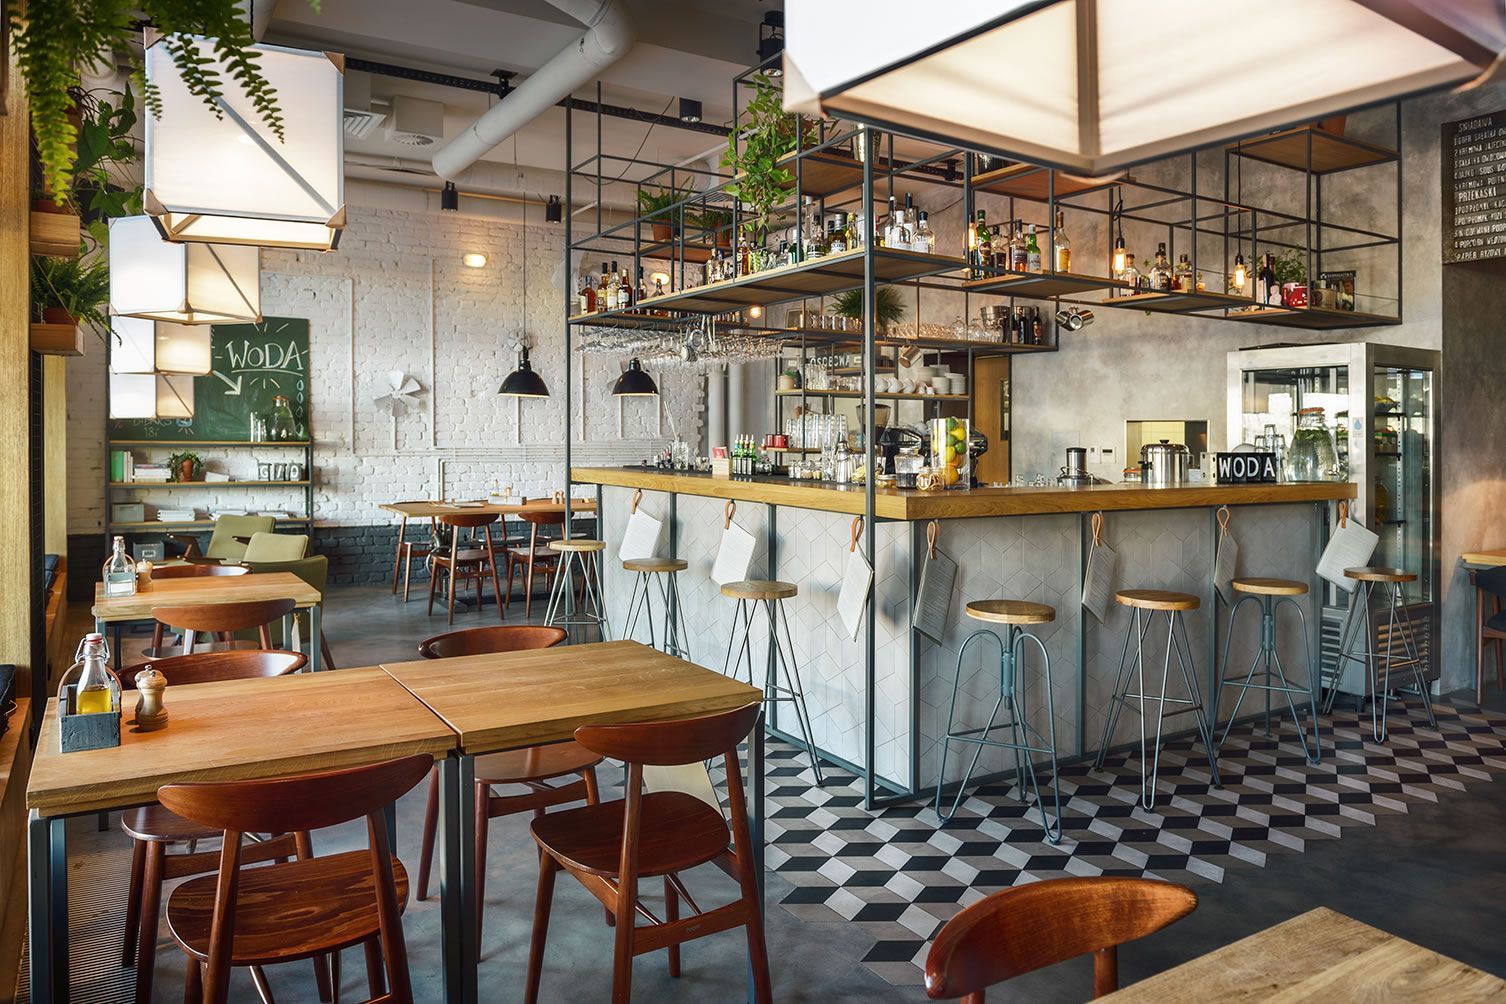 96 Kumpulan Dekorasi Cafe Sederhana Yang Belum Banyak Diketahui